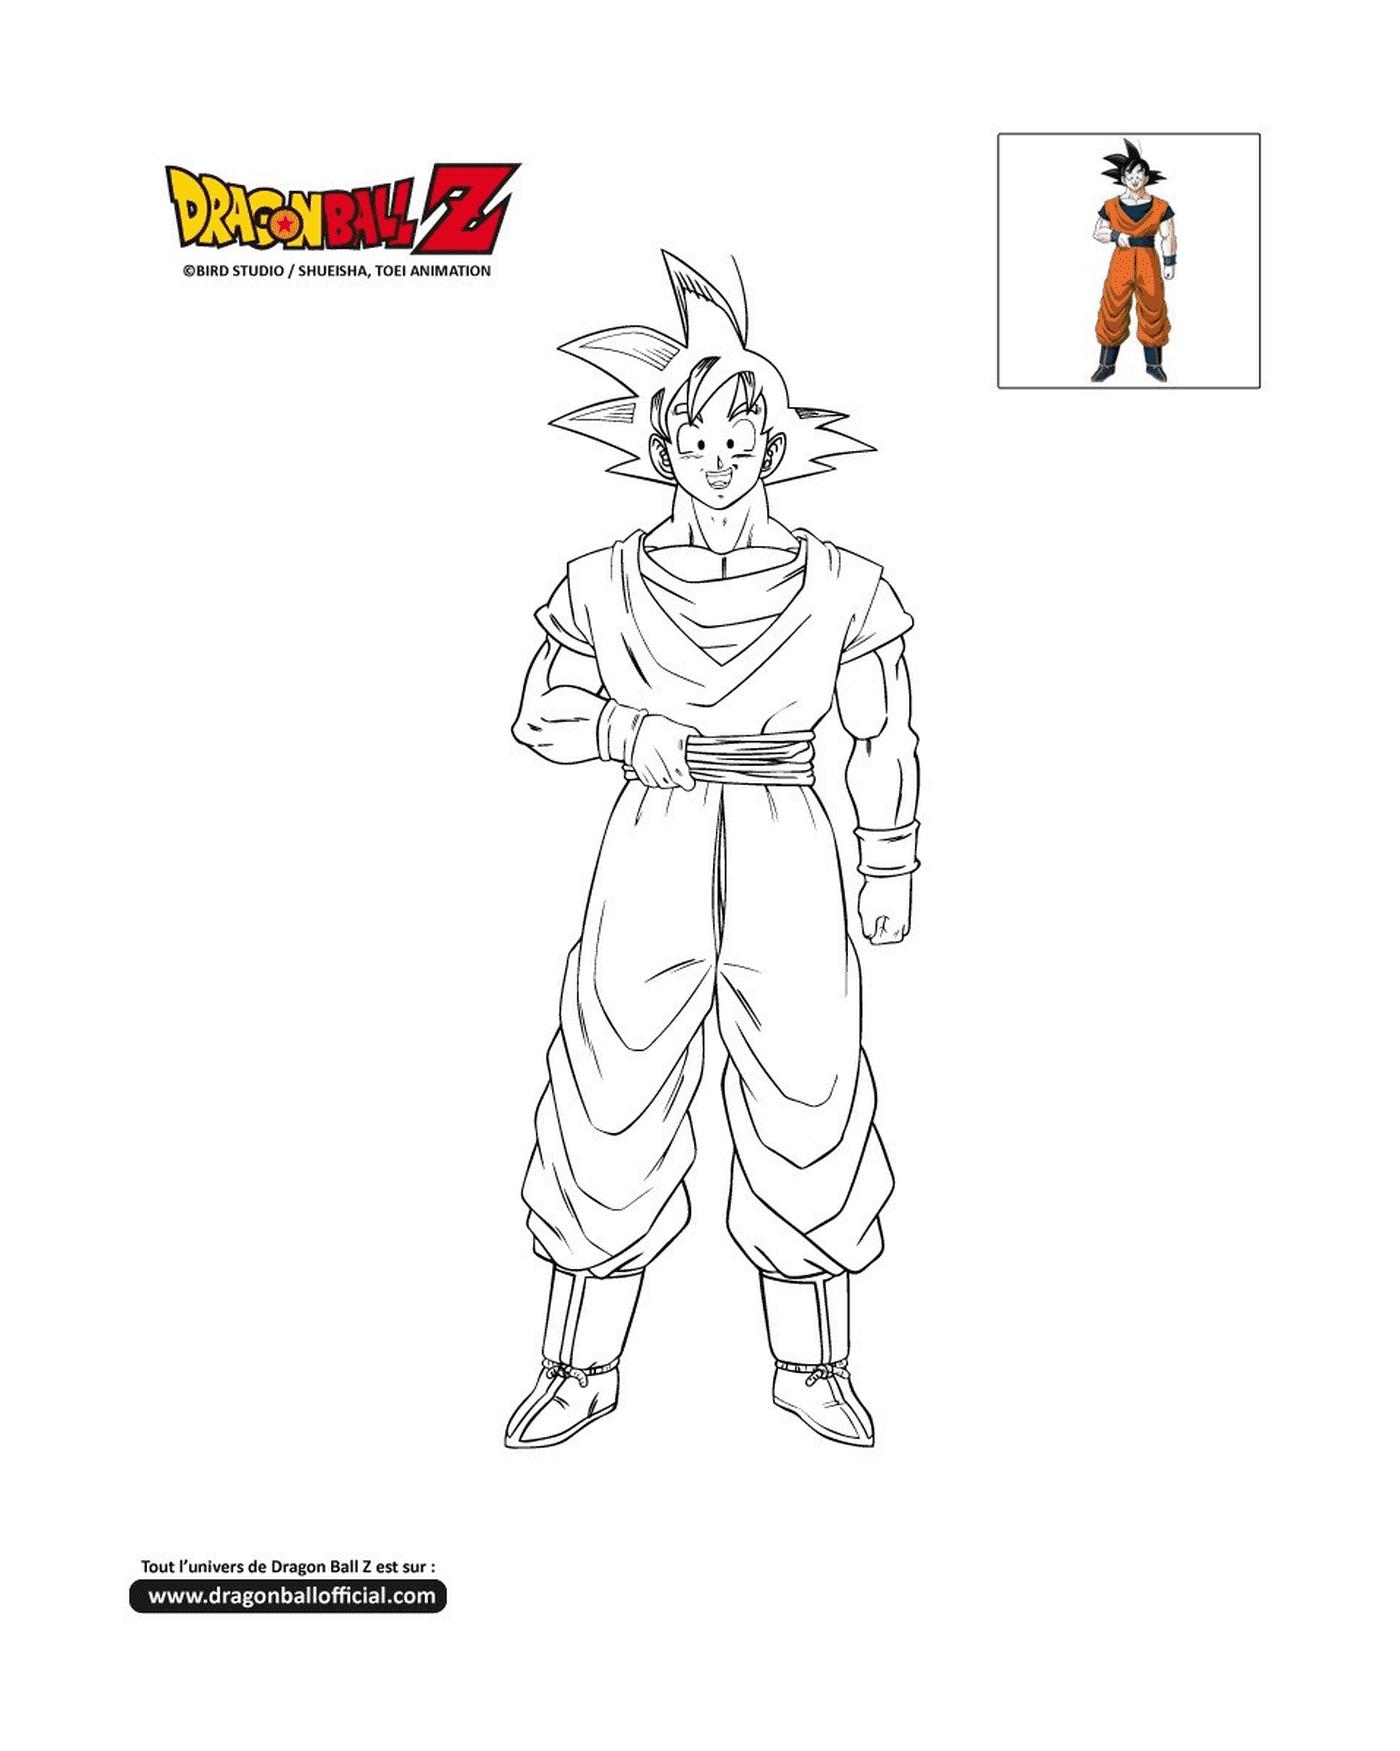   Goku, un homme déguisé en Dragon Ball Z 